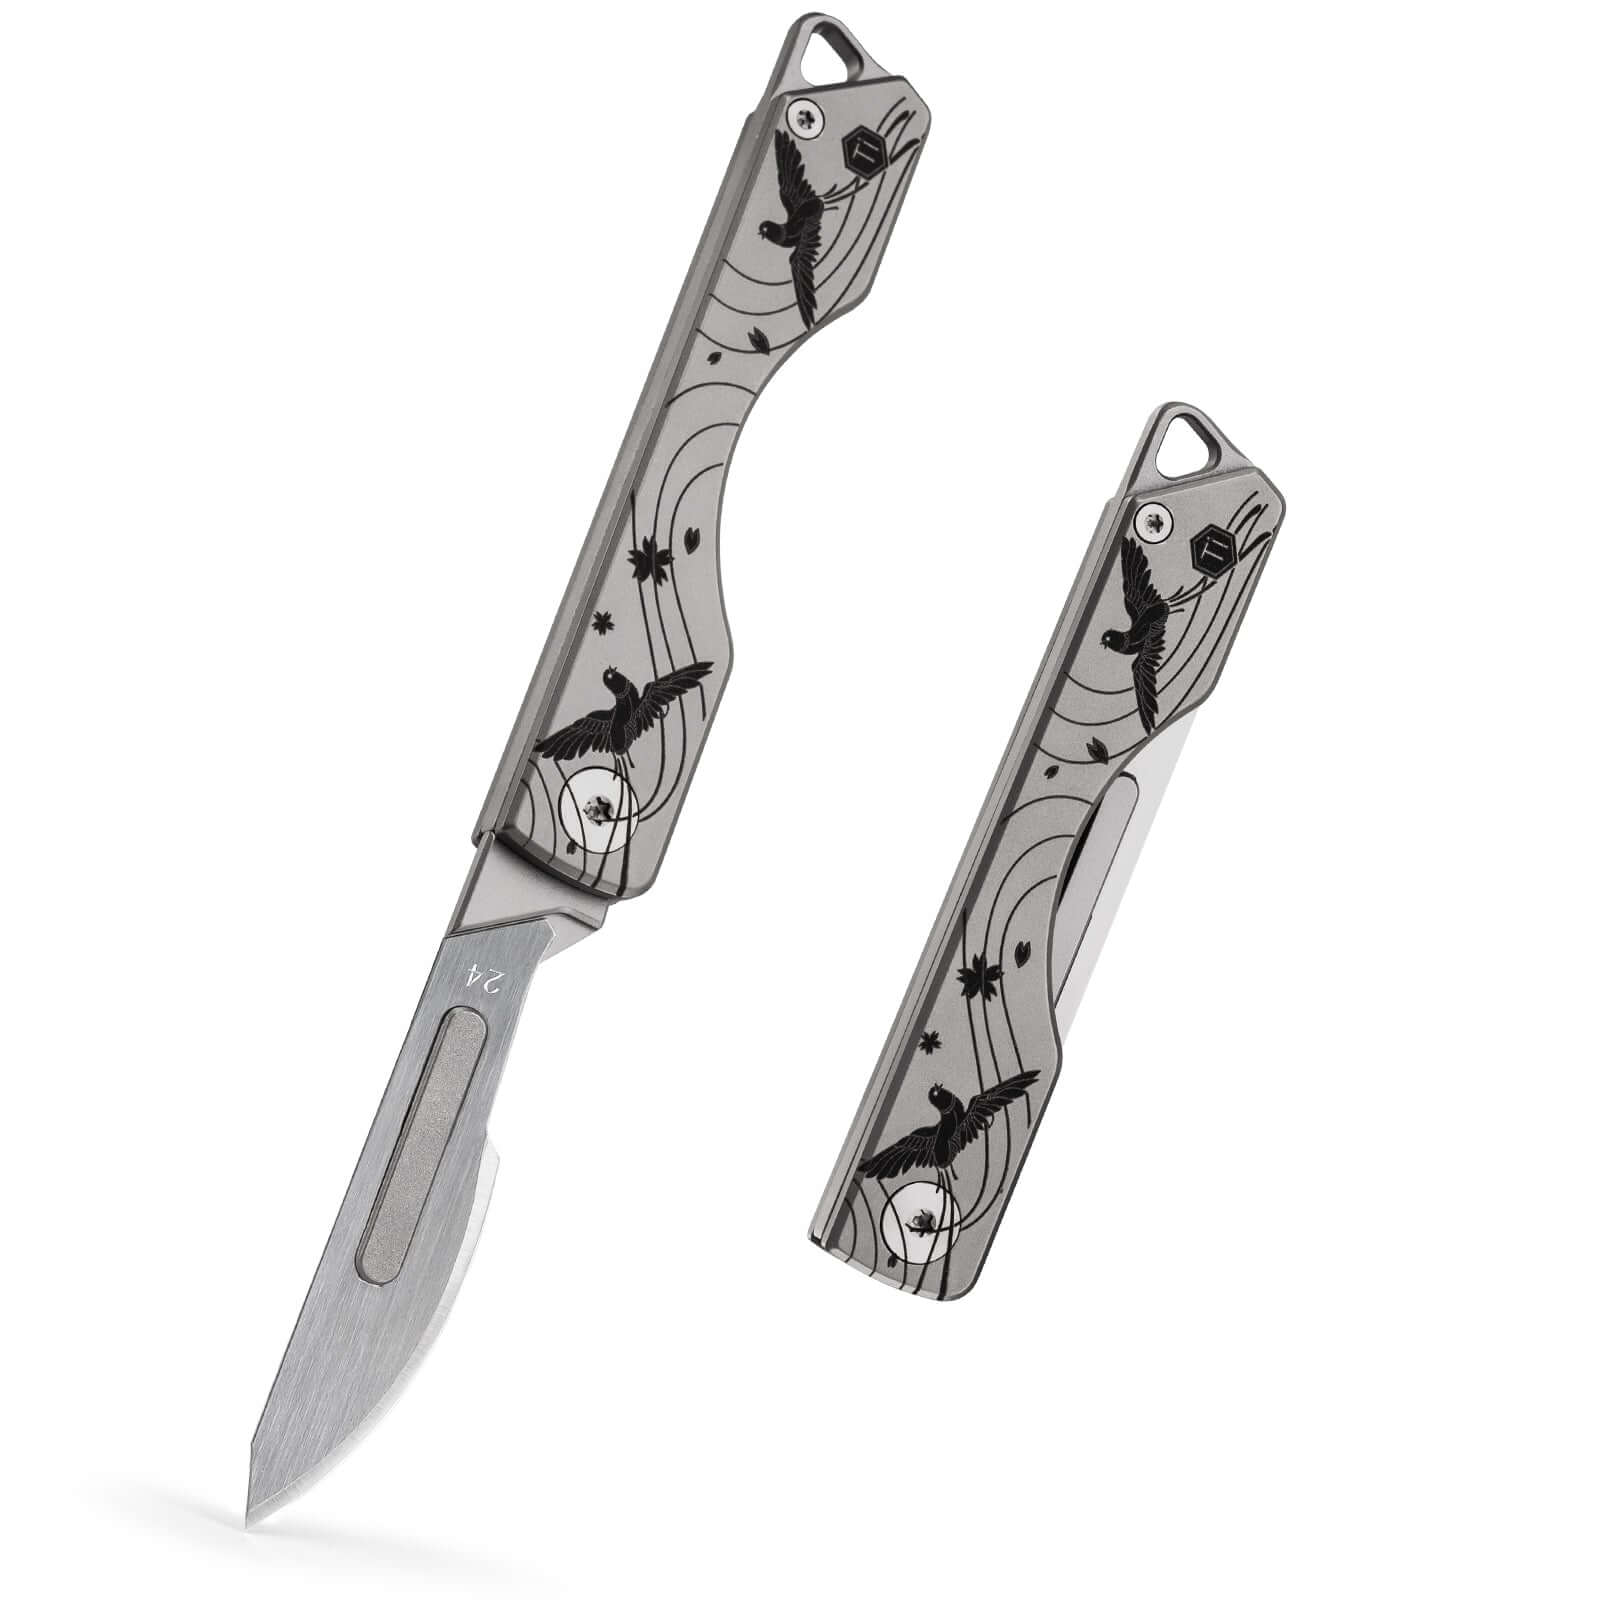 KeyUnity KK01 Titanium Pocket Knife & #24 Carbon Steel Scalpel